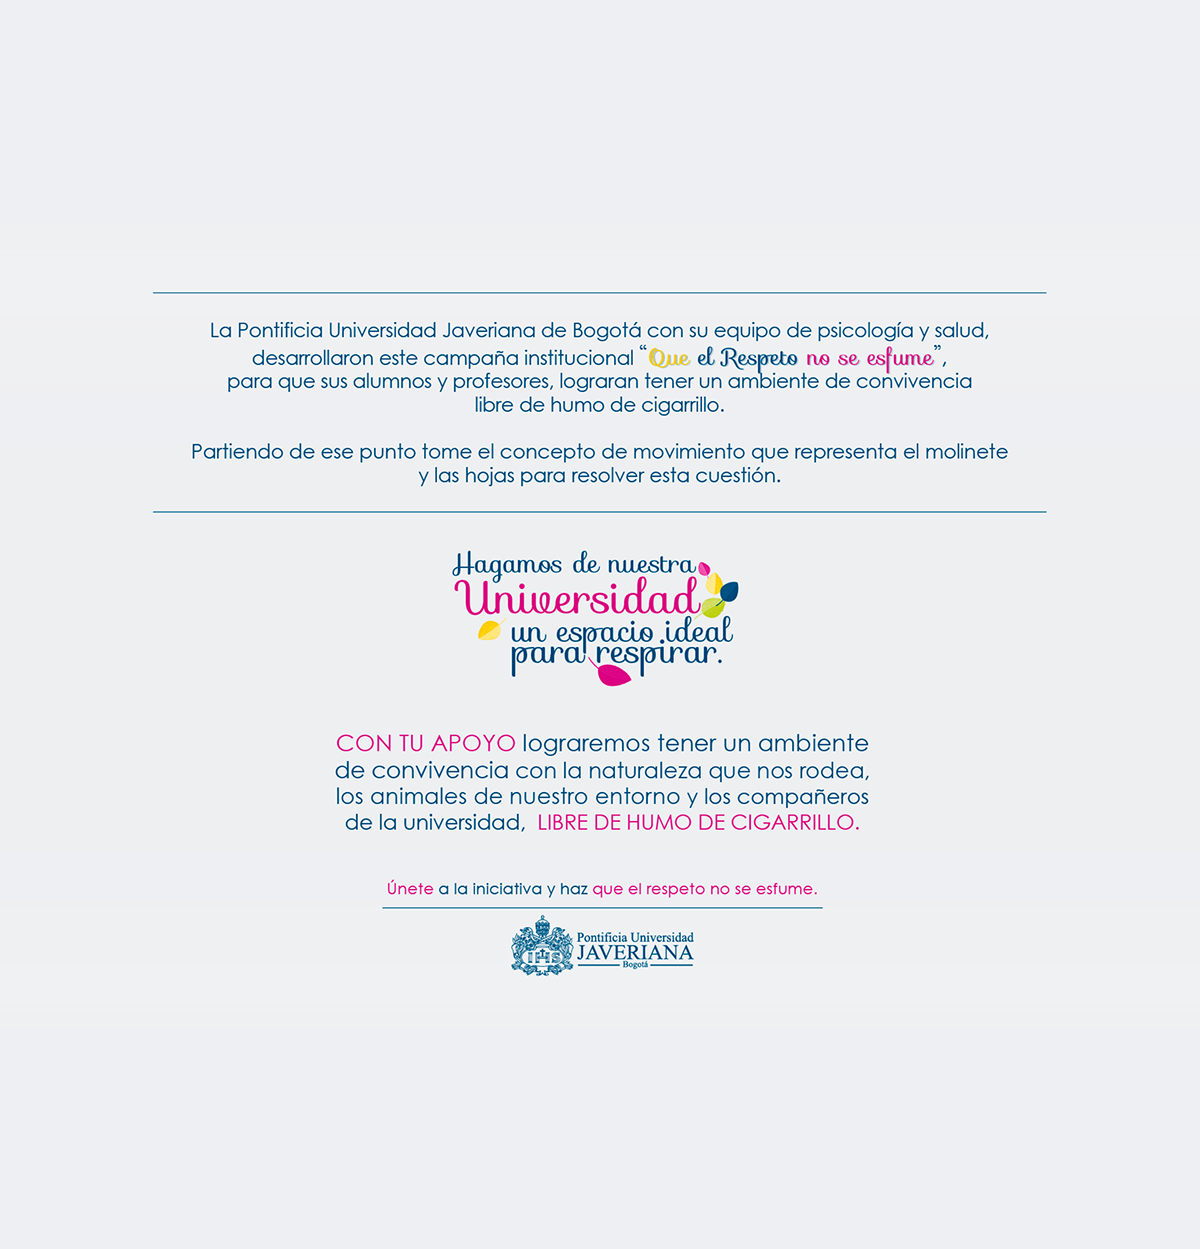 marca universidad javeriana respeto fume Molinete campaign graphic design 